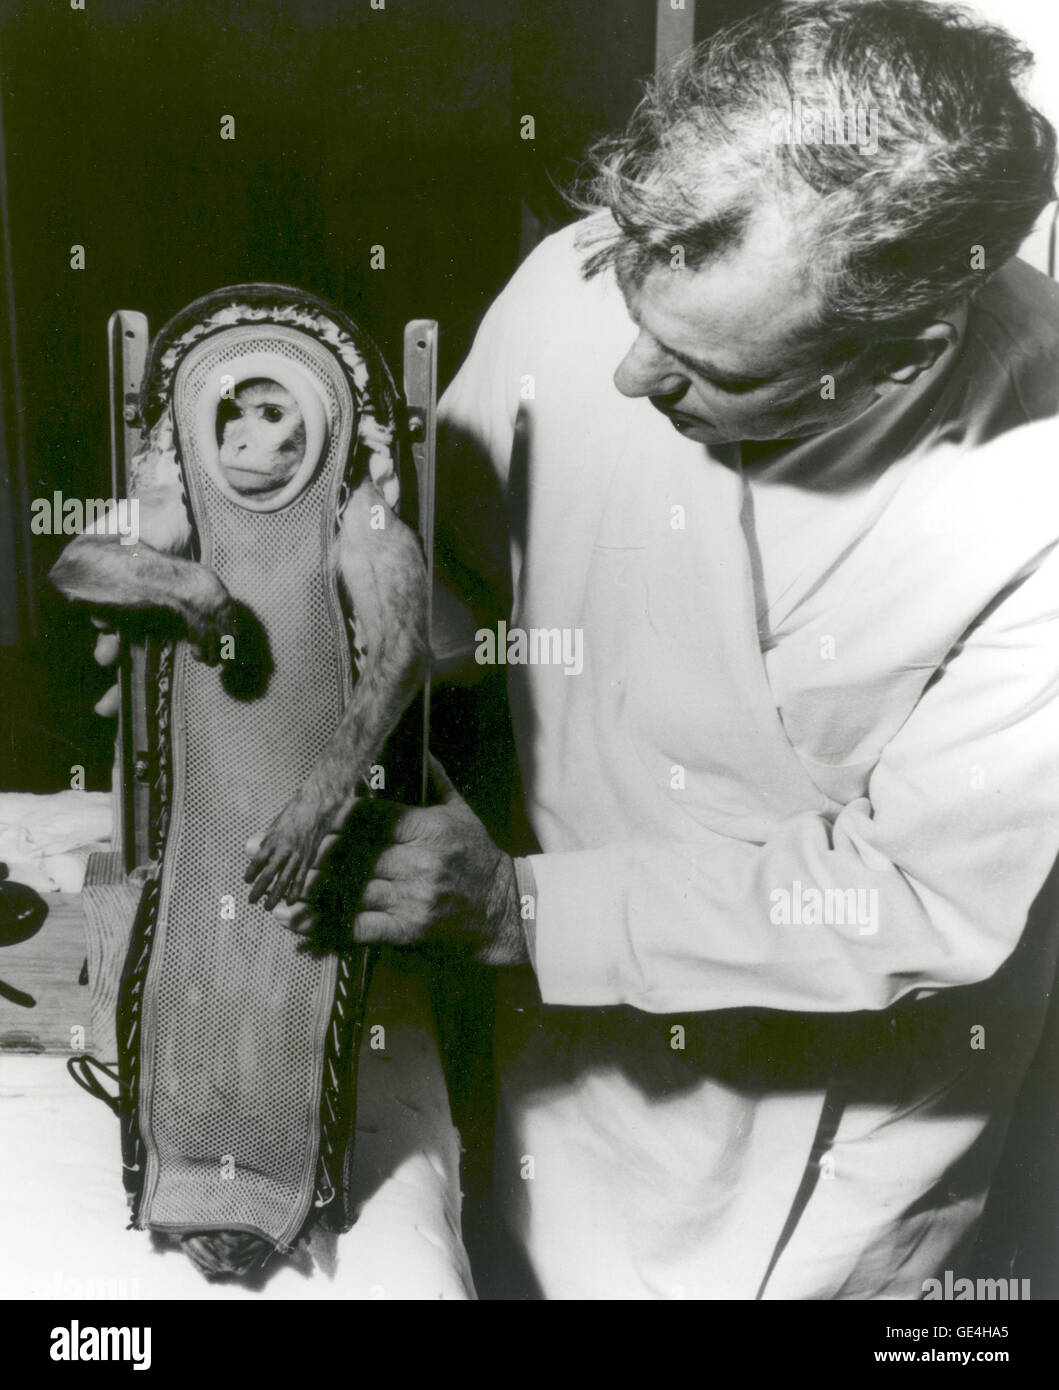 (4 Dezember 1959) Sam, der Rhesus-Affen, nach seiner Fahrt in das Raumschiff Little Joe-2 (LJ-2). Ein Zerstörer der US Navy wiederhergestellt sicher Sam, nachdem er drei Minuten Schwerelosigkeit während des Fluges erlebt. Tiere wurden oft bei Testflügen für Projekt-Quecksilber verwendet, um zu bestimmen, die Auswirkungen der Raumfahrt und Schwerelosigkeit auf den Menschen. LJ-2 war eine in einer Reihe von Flügen, die zu den menschlichen Orbitalflüge der NASA Projekt Mercury-Programm haben geführt. Little Joe-Raketenmotor wurde als billiger, kleiner und funktionalere Alternative zu der Redstone-Raketen entwickelt. Little Joe co Stockfoto